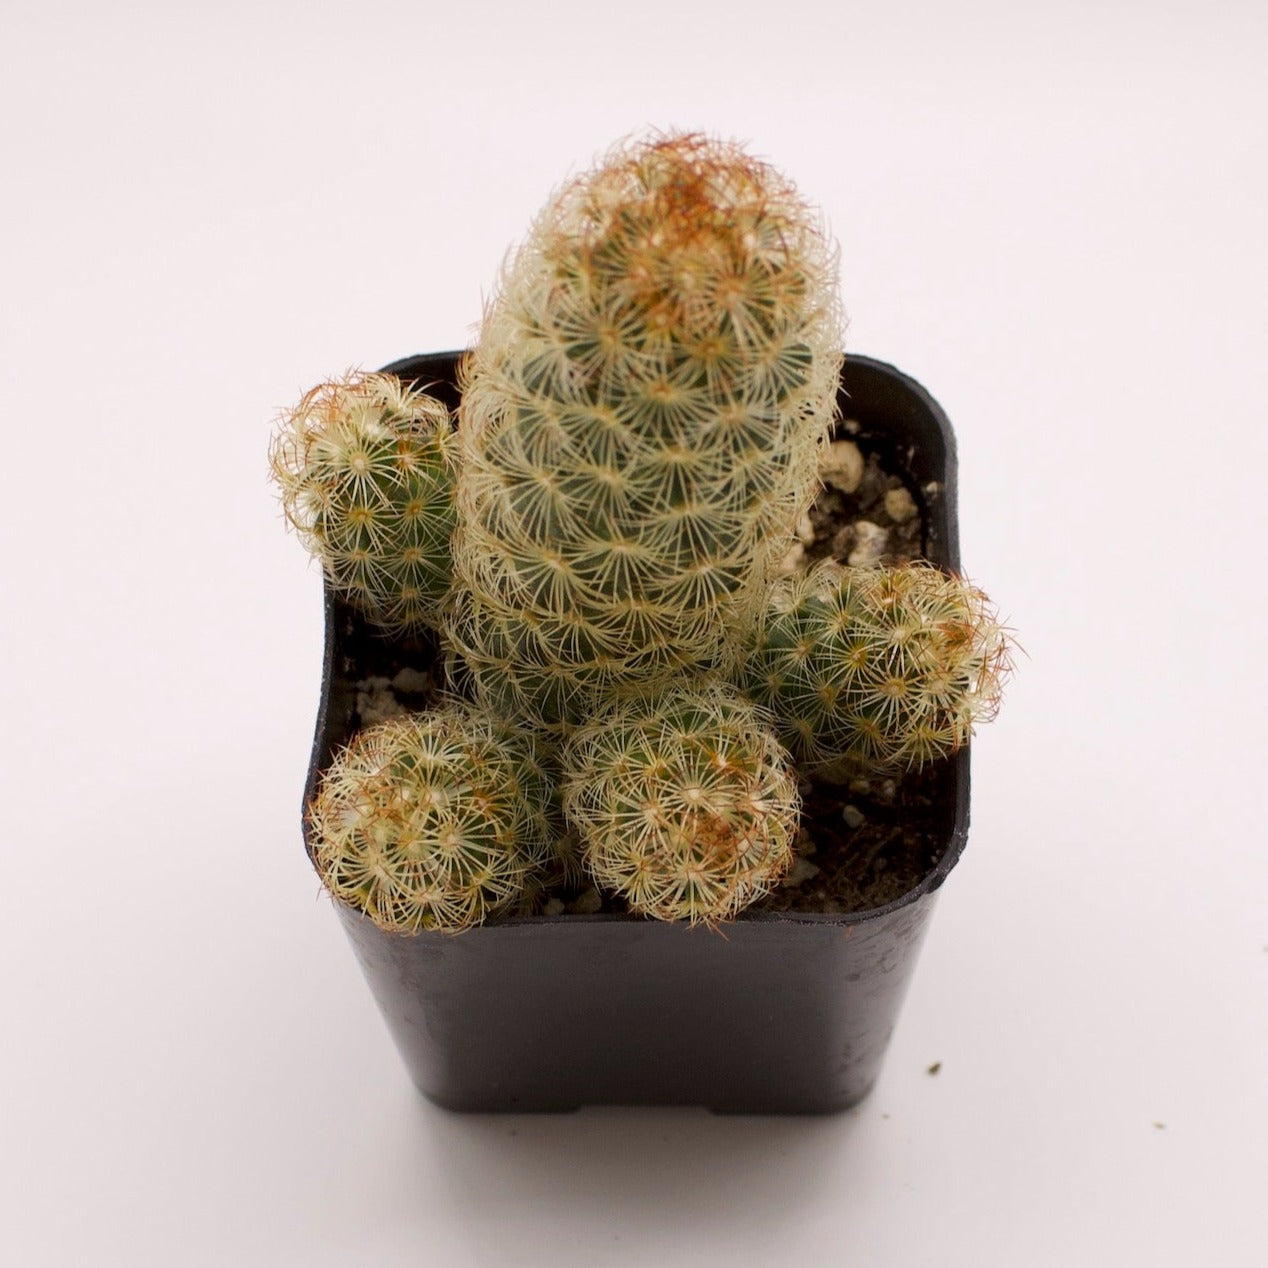 Mammillaria Lady Finger Cactus